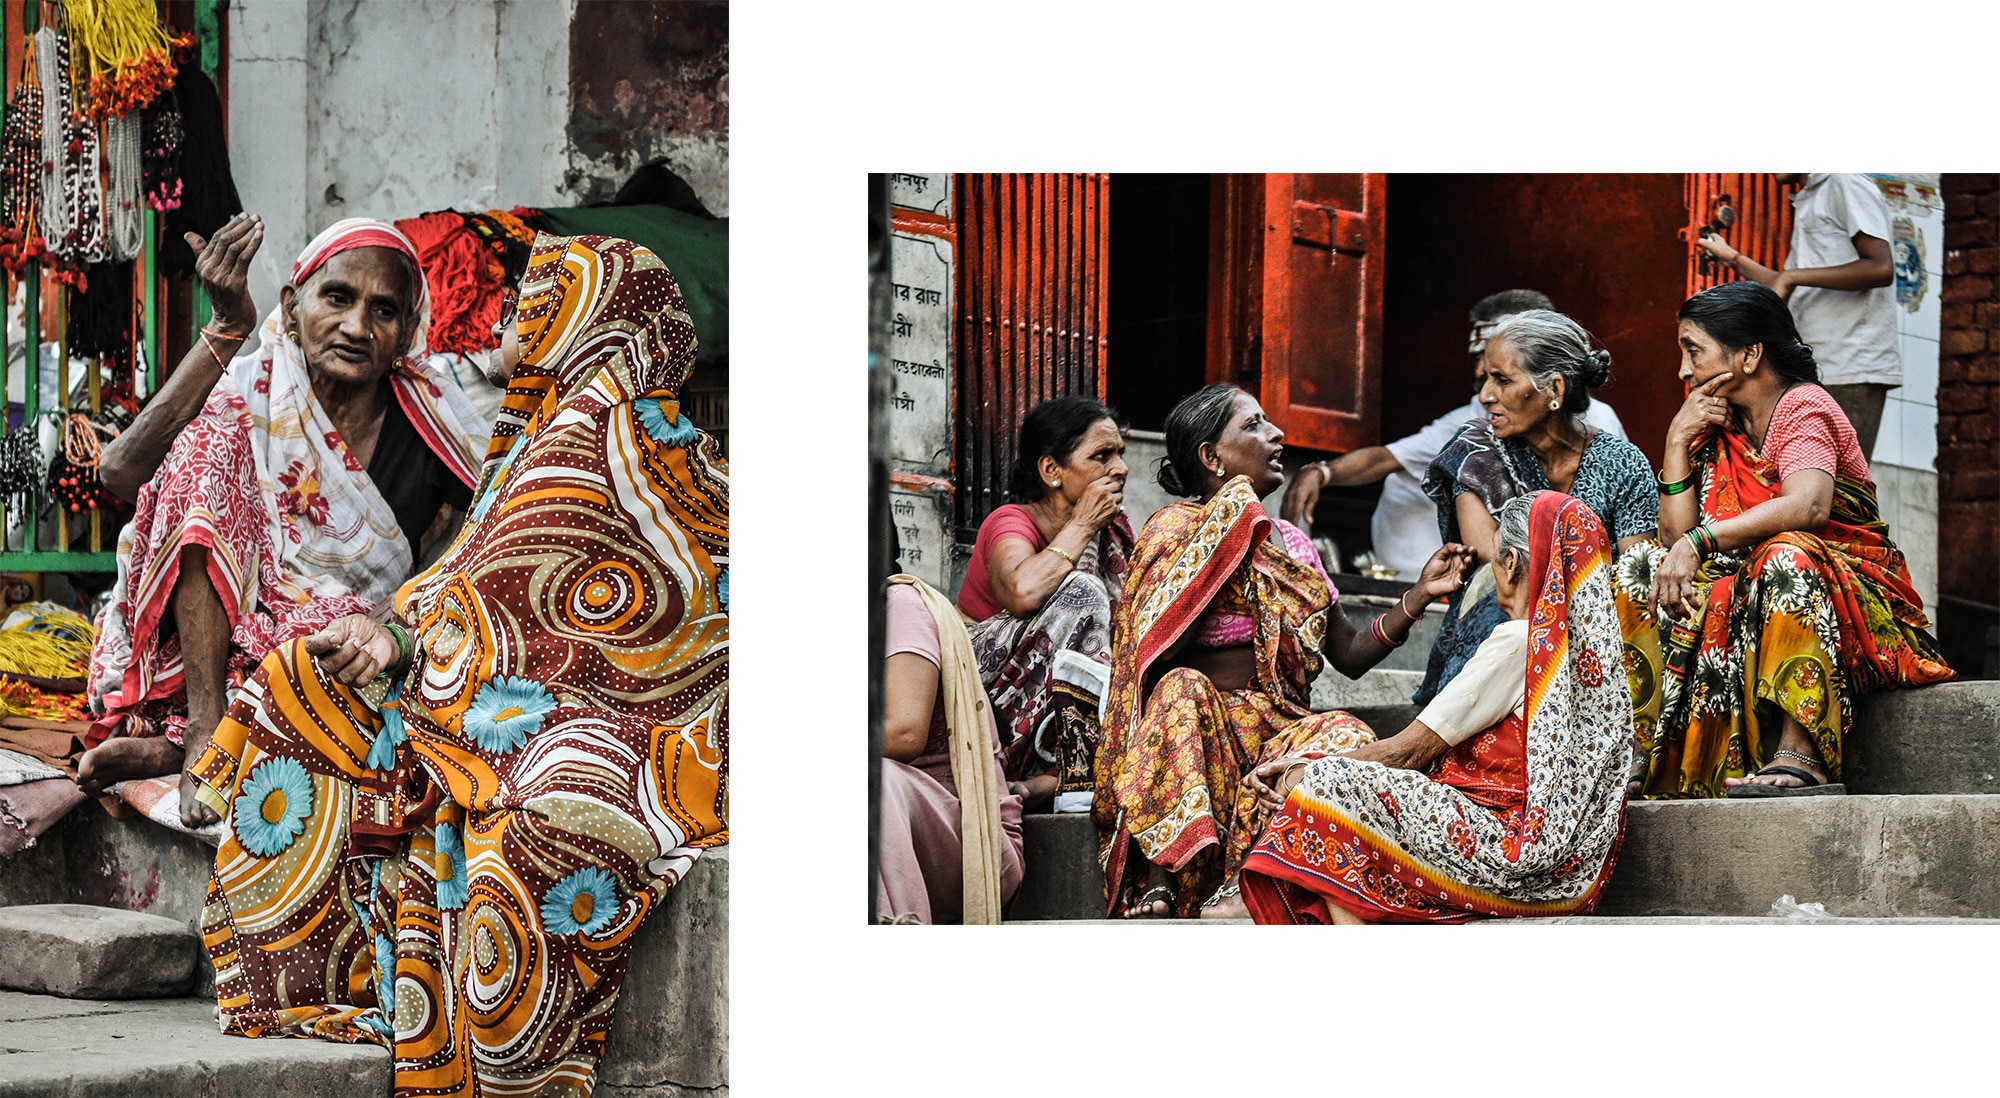 Des femmes aux vêtements colorés à Varanasi en Inde